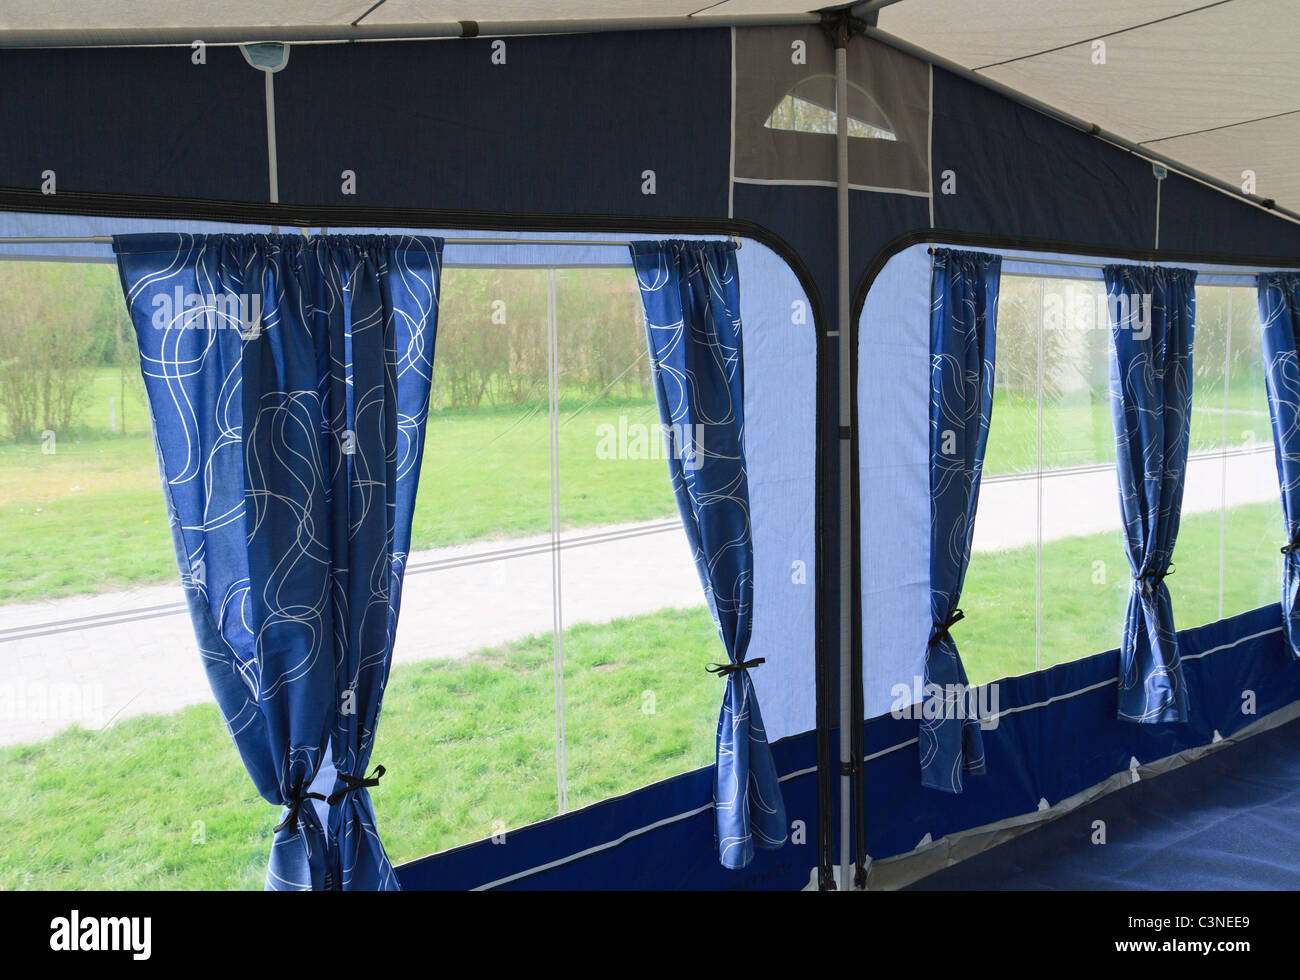 À l'intérieur de l'auvent caravane tente avec des rideaux bleus et quatre fenêtres Banque D'Images